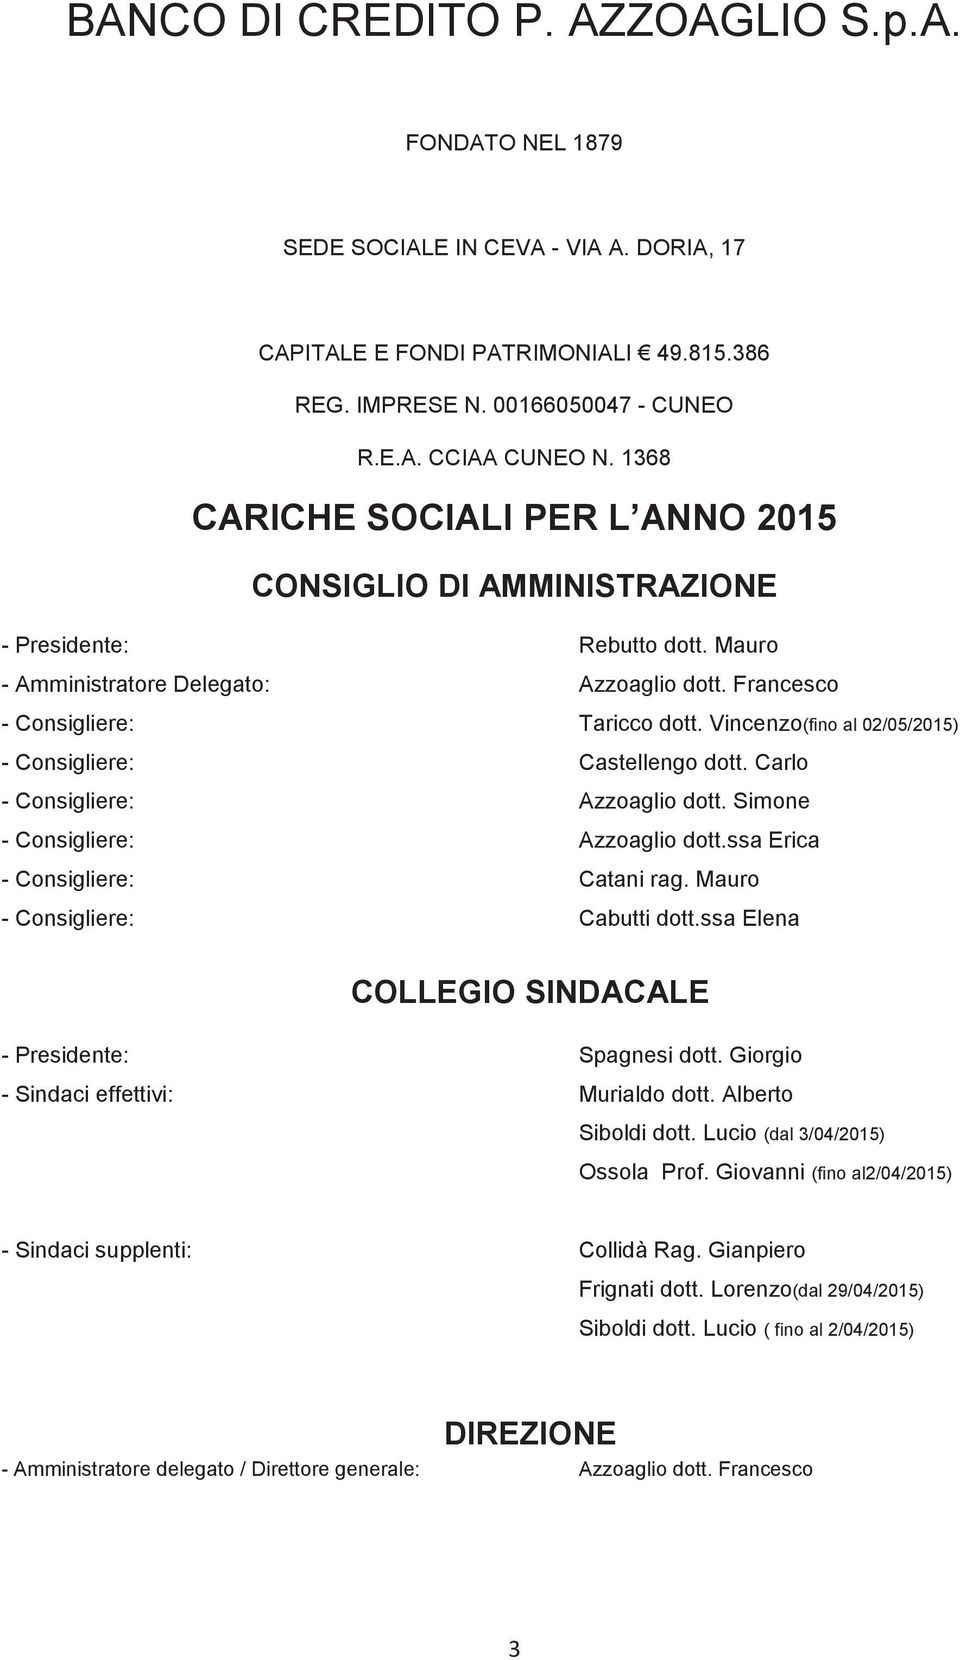 Vincenzo(fino al 02/05/2015) - Consigliere: Castellengo dott. Carlo - Consigliere: Azzoaglio dott. Simone - Consigliere: Azzoaglio dott.ssa Erica - Consigliere: Catani rag.